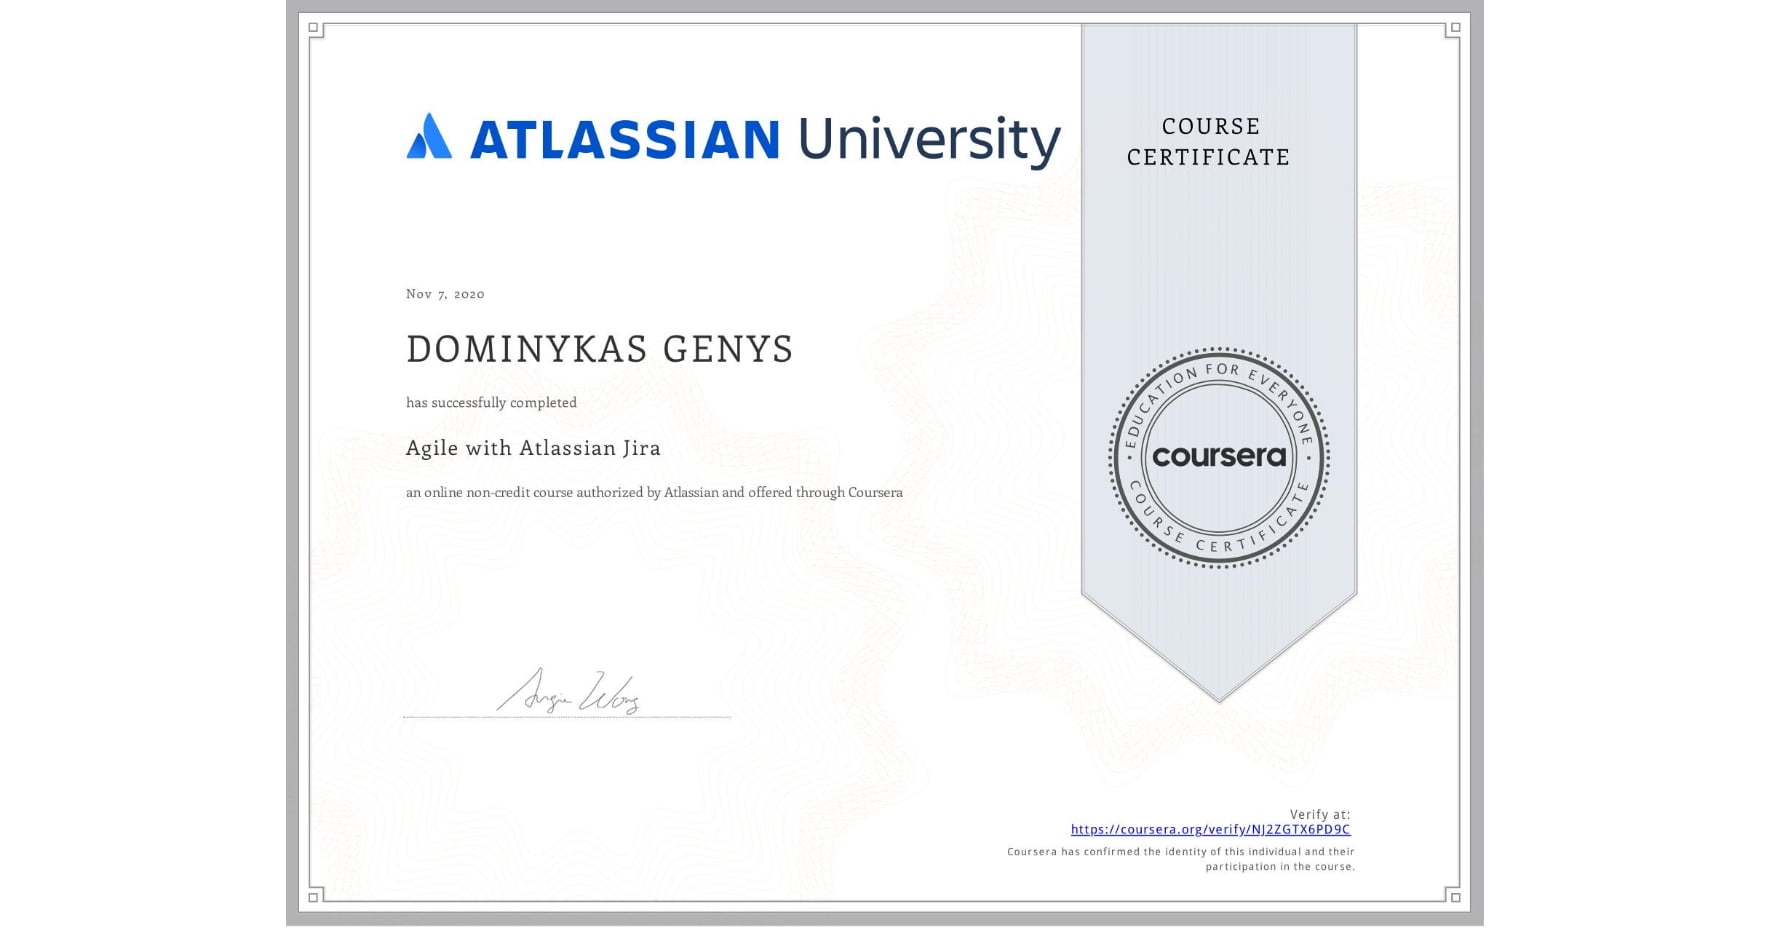 Atlassian University